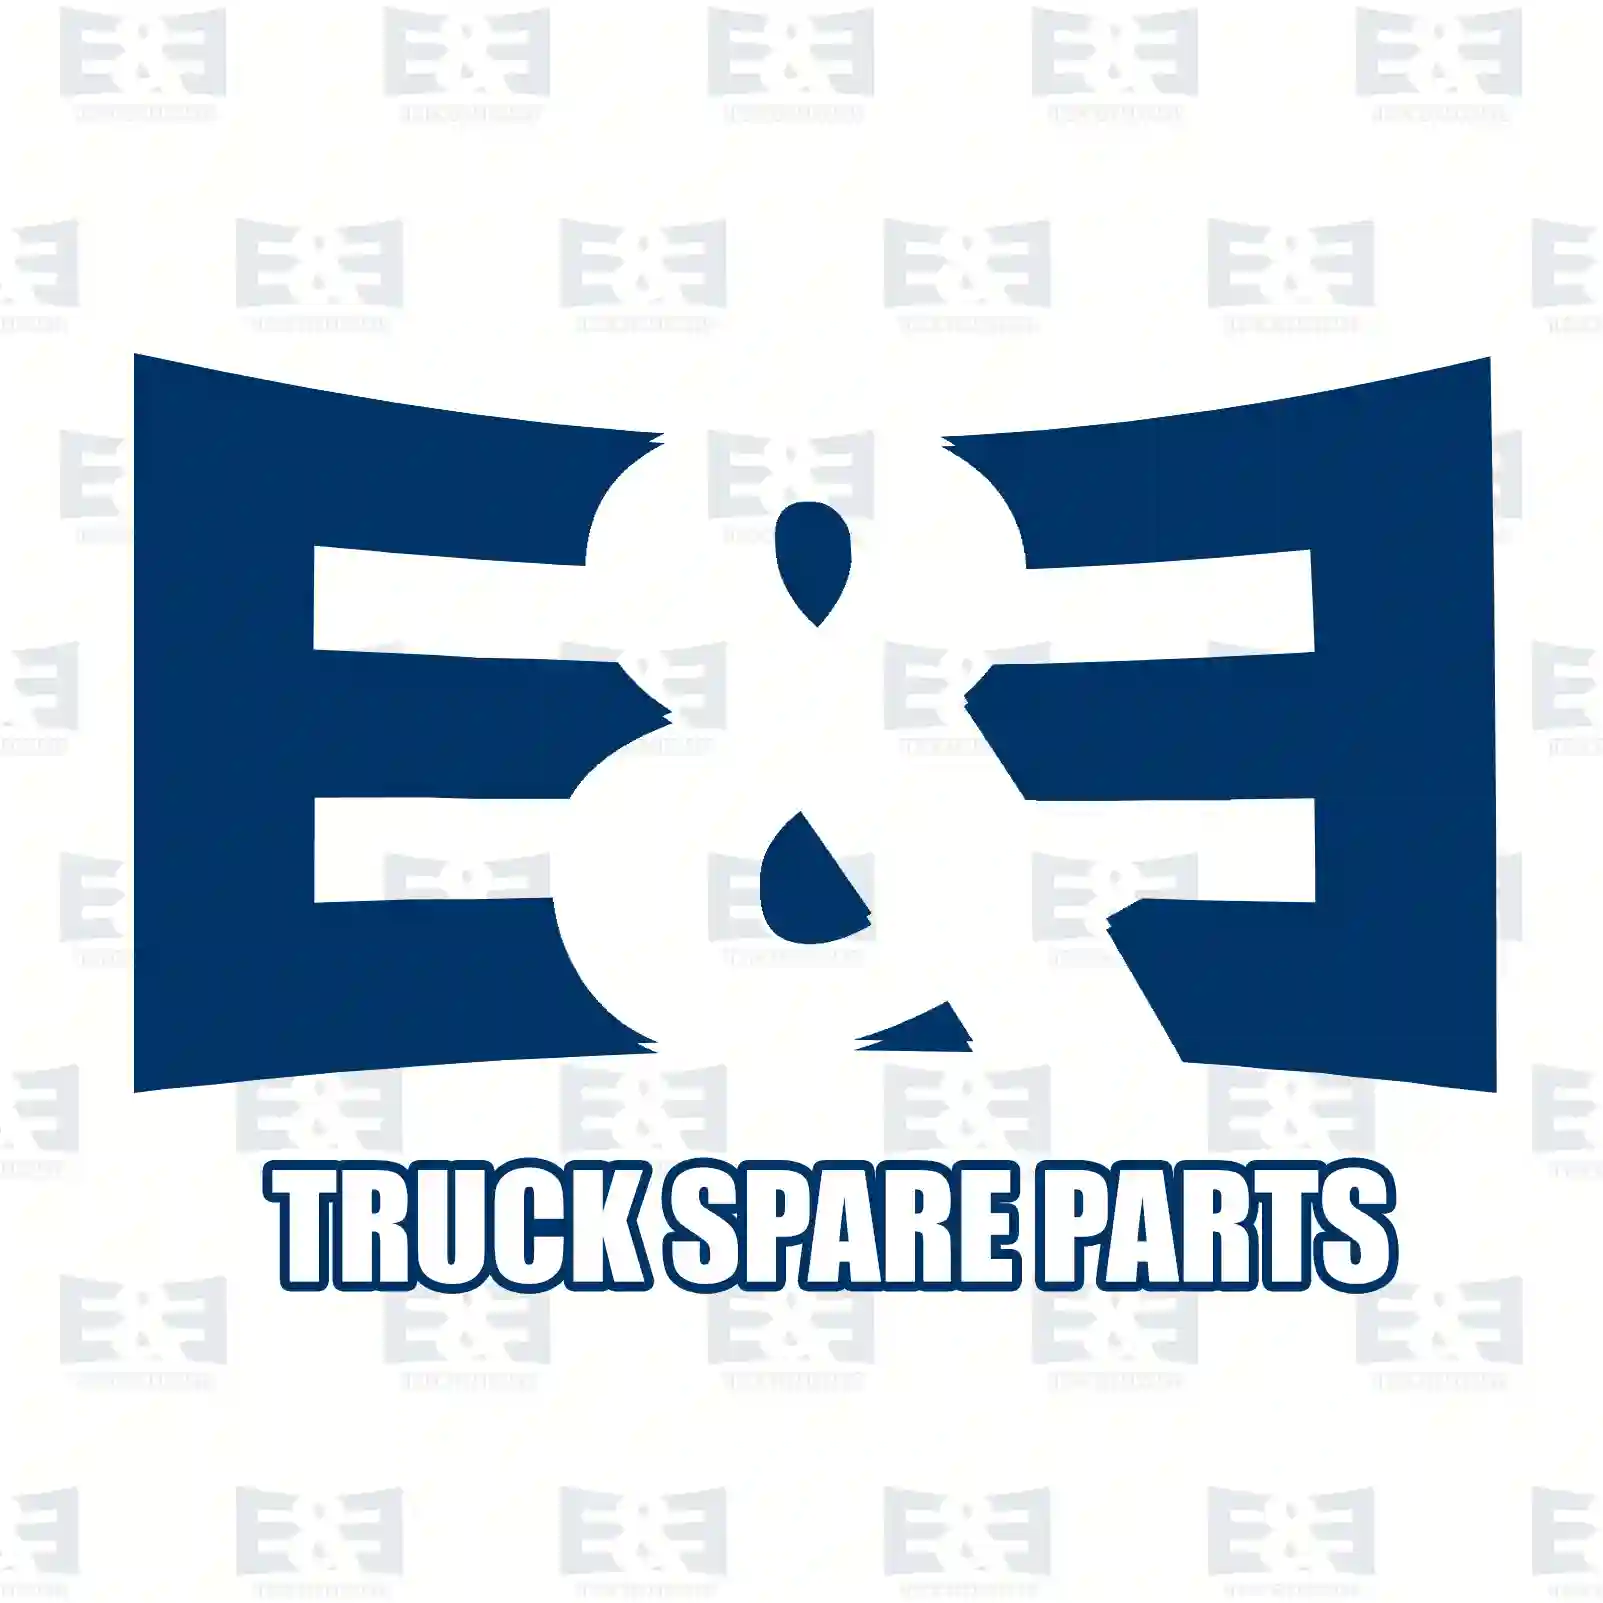 Cylinder head, compressor, complete, 2E2296177, BBU5510, 51541146045S, 0001303919, 0001304119, ZG50392-0008 ||  2E2296177 E&E Truck Spare Parts | Truck Spare Parts, Auotomotive Spare Parts Cylinder head, compressor, complete, 2E2296177, BBU5510, 51541146045S, 0001303919, 0001304119, ZG50392-0008 ||  2E2296177 E&E Truck Spare Parts | Truck Spare Parts, Auotomotive Spare Parts